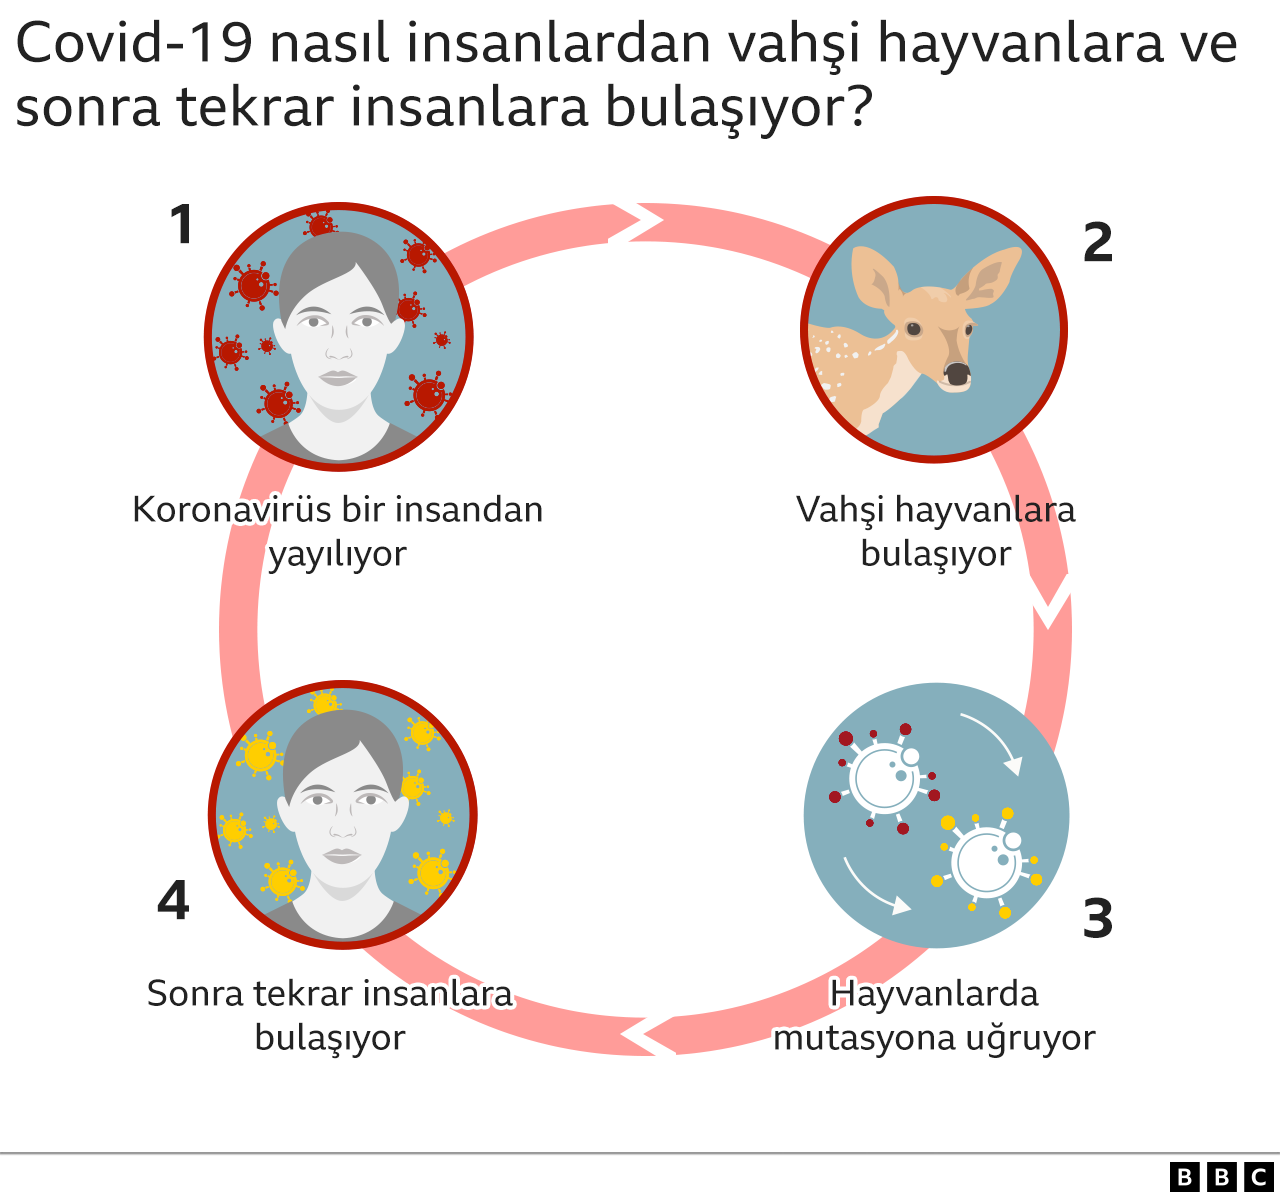 Covid-19 nasıl insan ve hayvanlar arasında dolaşıyor grafiği